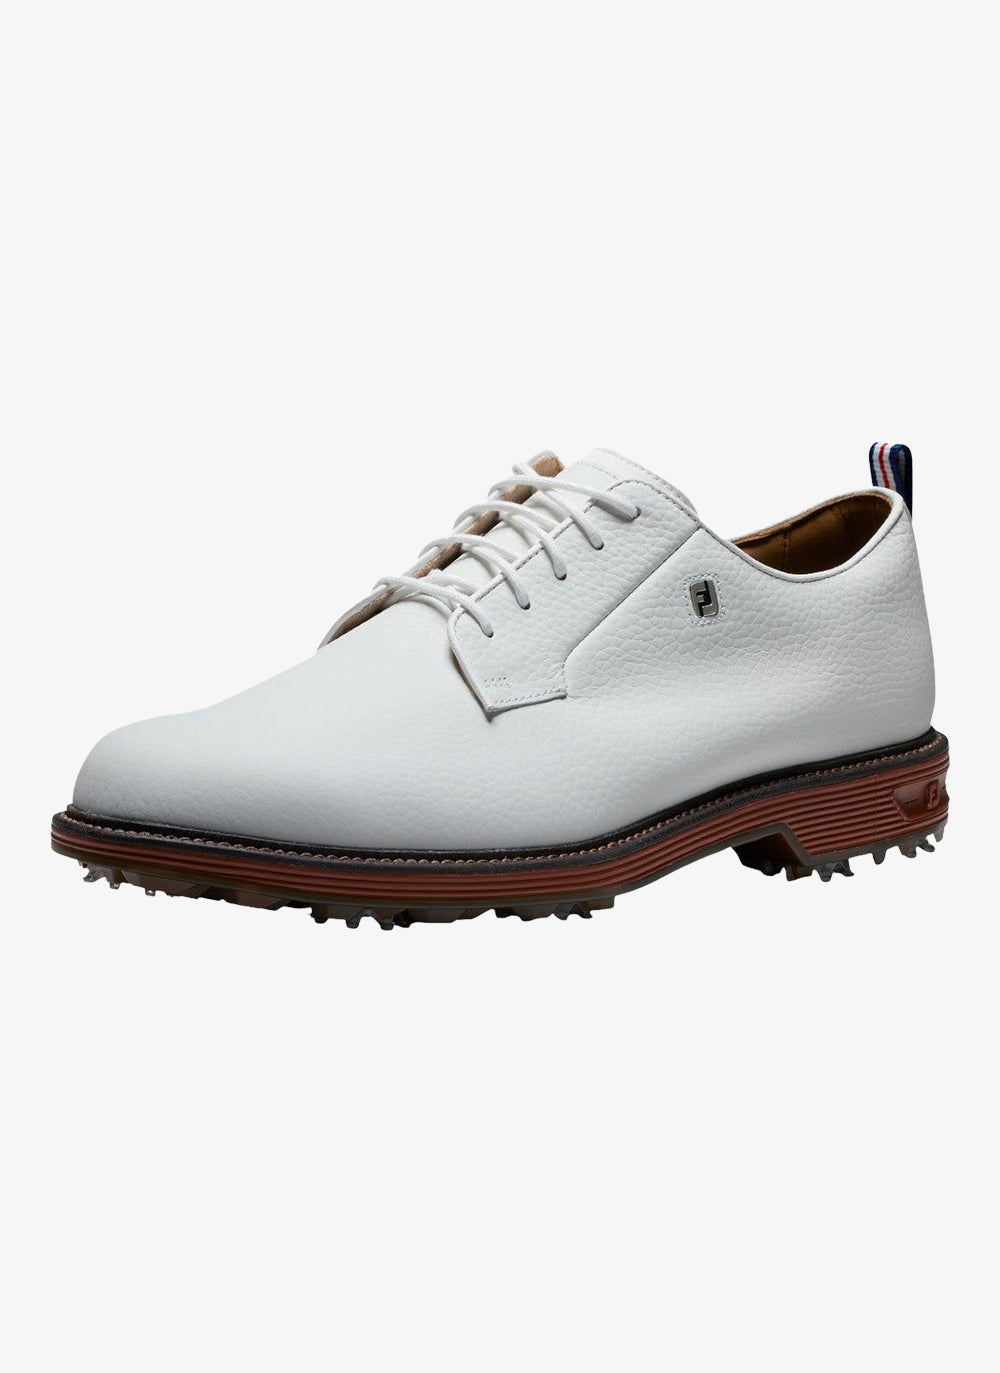 Footjoy Premiere Series Field Golf Shoes 53992